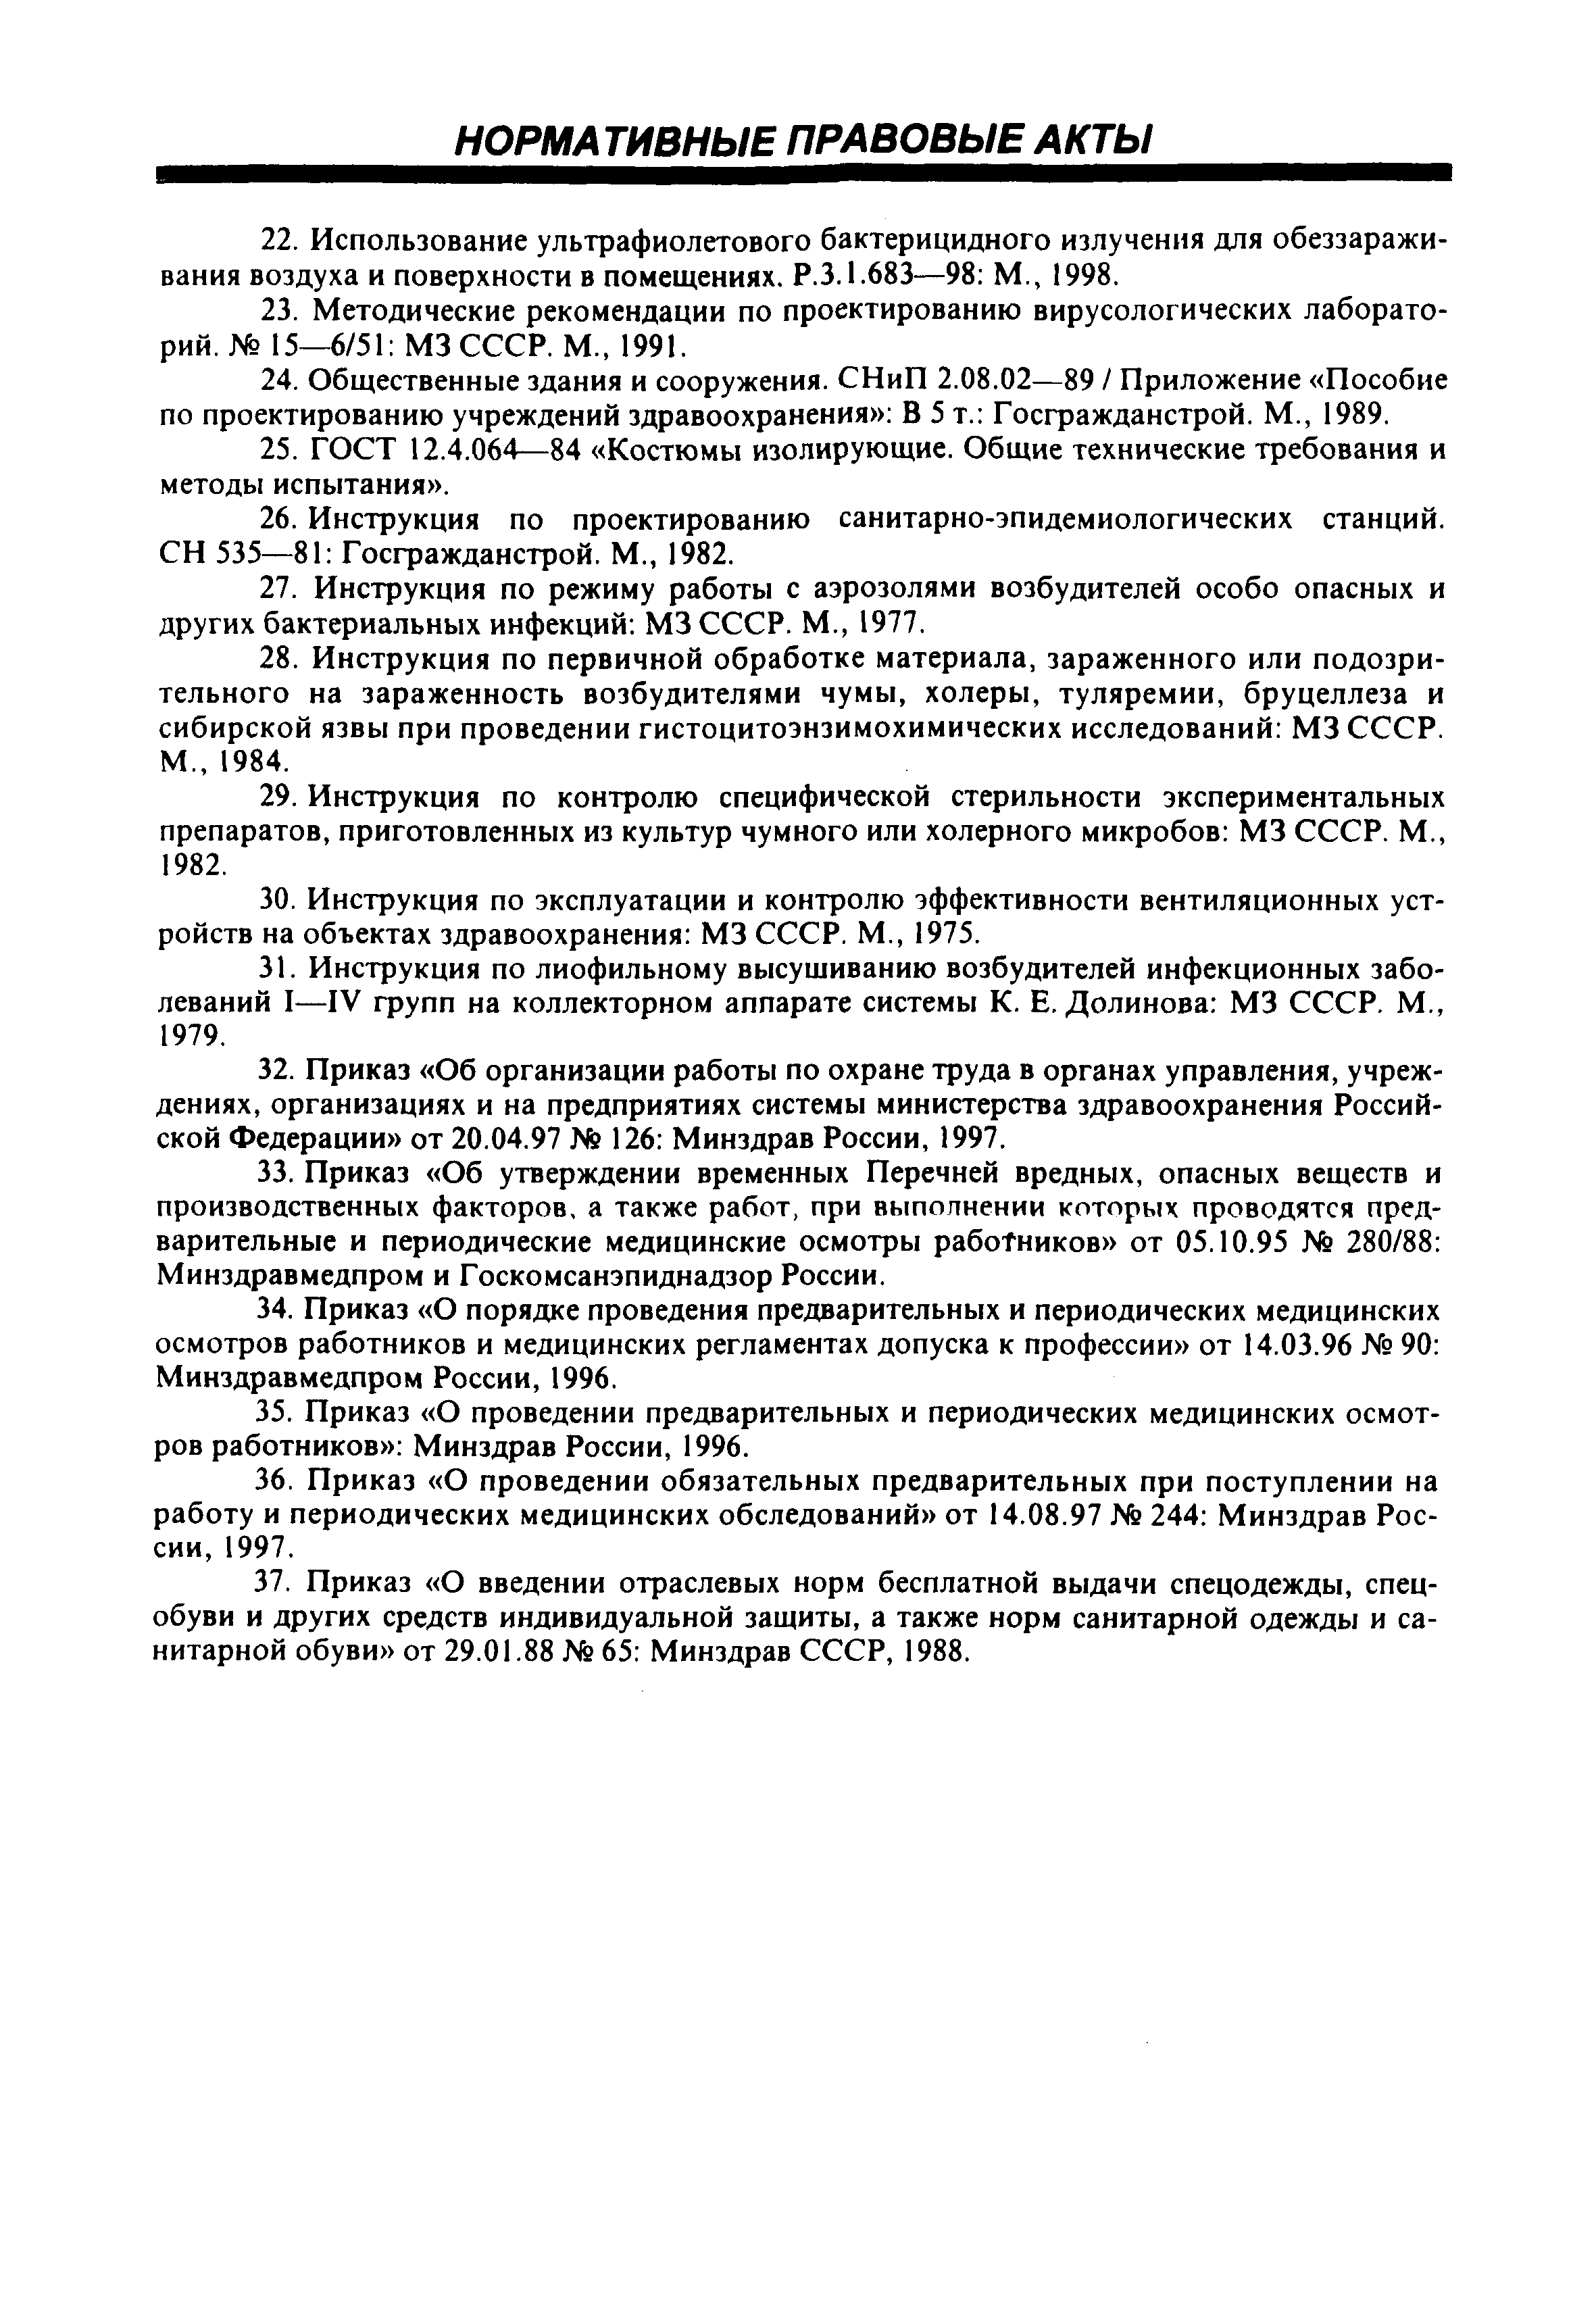 СП 1.3.1285-03